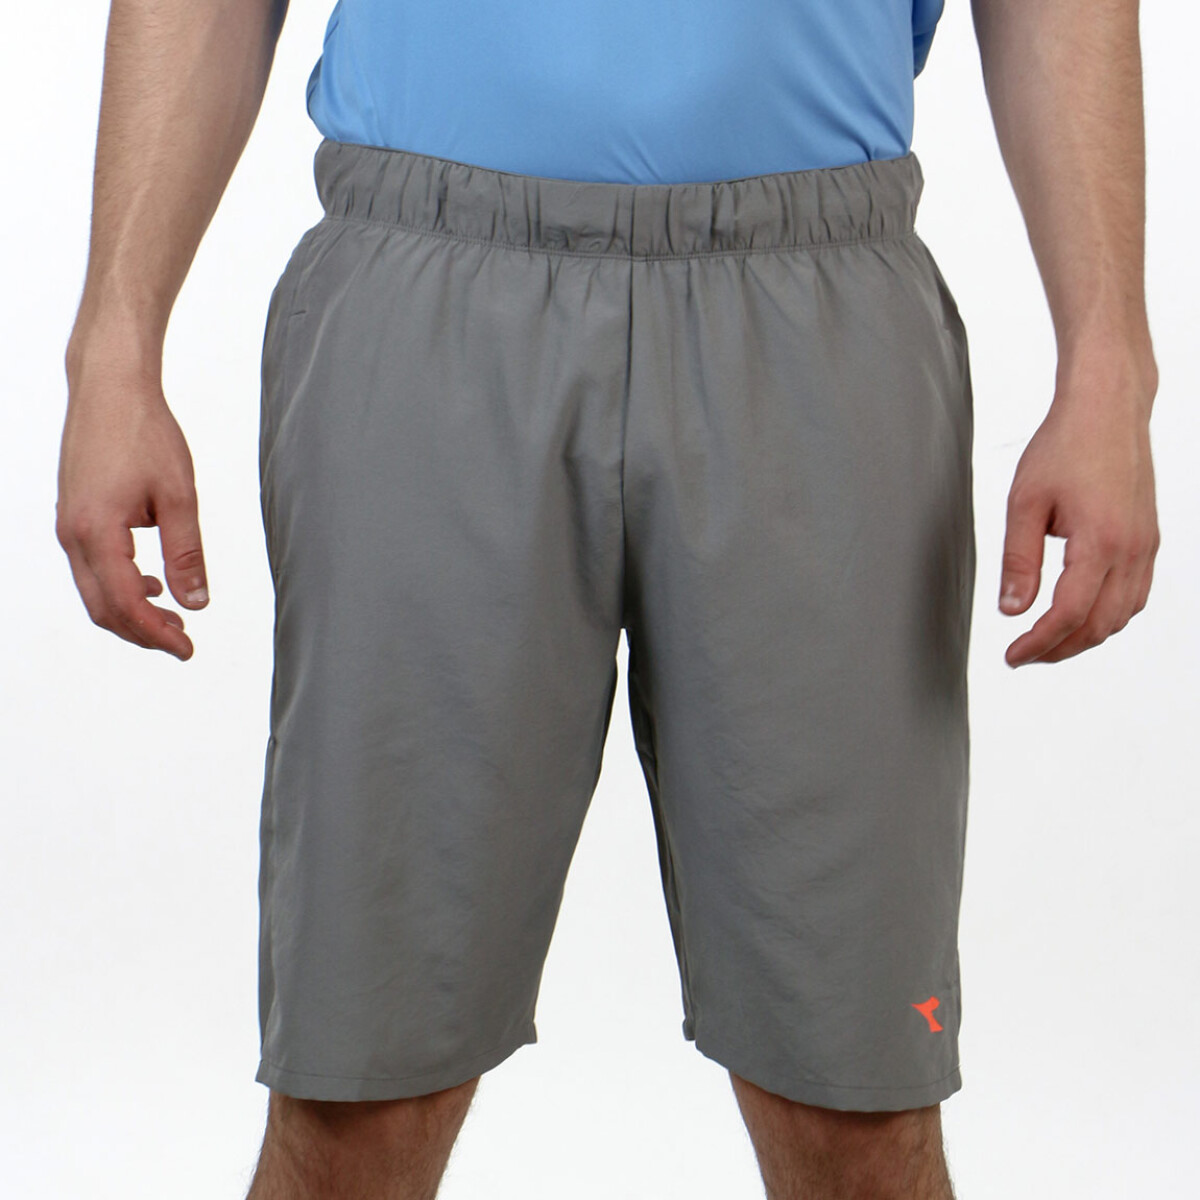 Diadora Hombre Sport Short Dry Fit Long - Dk Grey - Gris Oscuro 